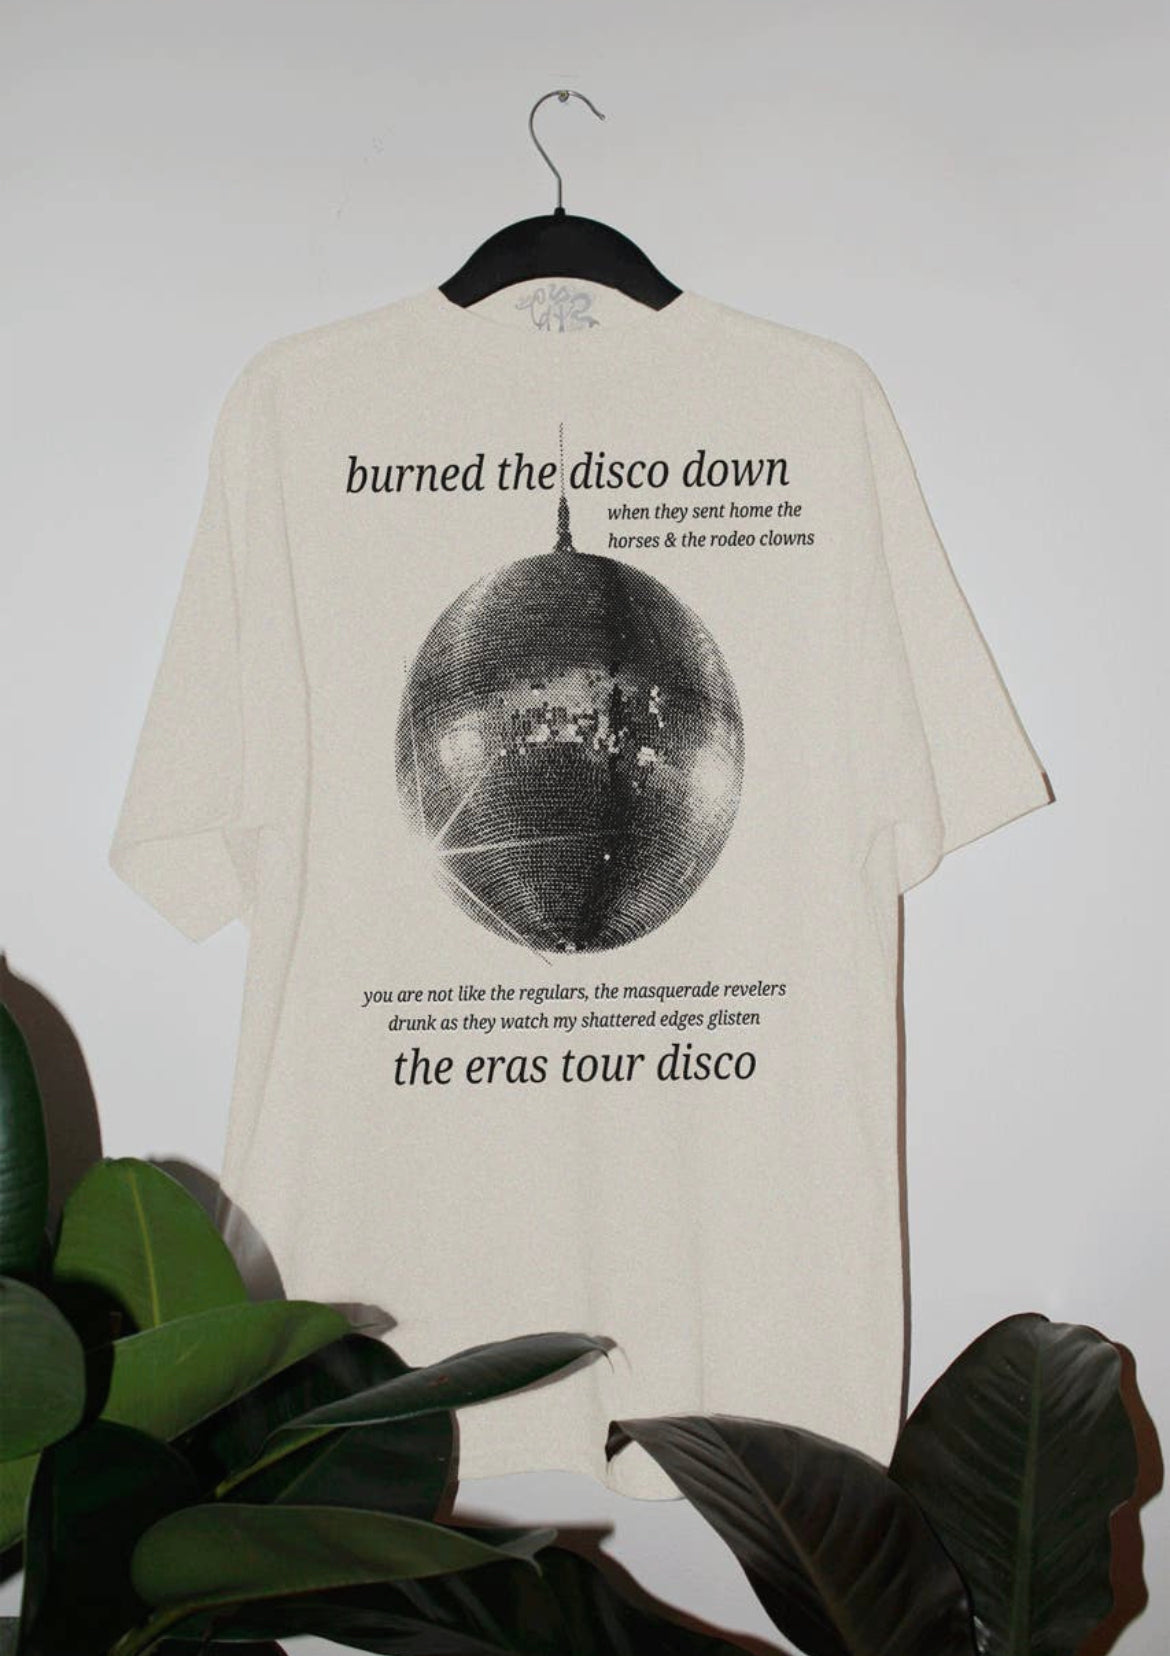 Eras tour disco shirt